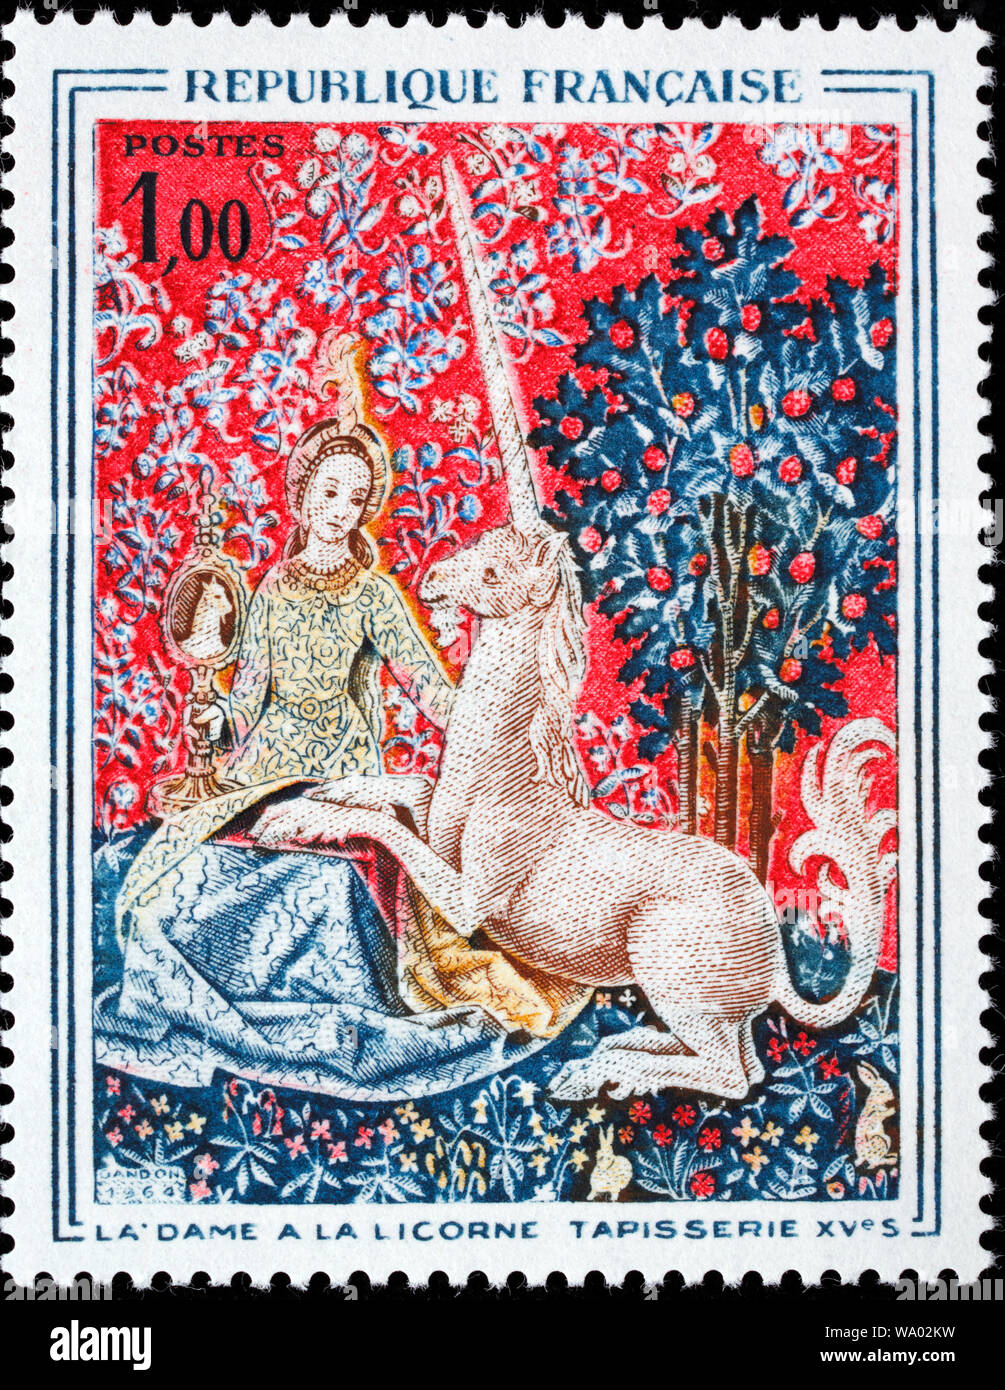 La tappezzeria, la signora e il bufalo, francobollo, Francia, 1964 Foto Stock